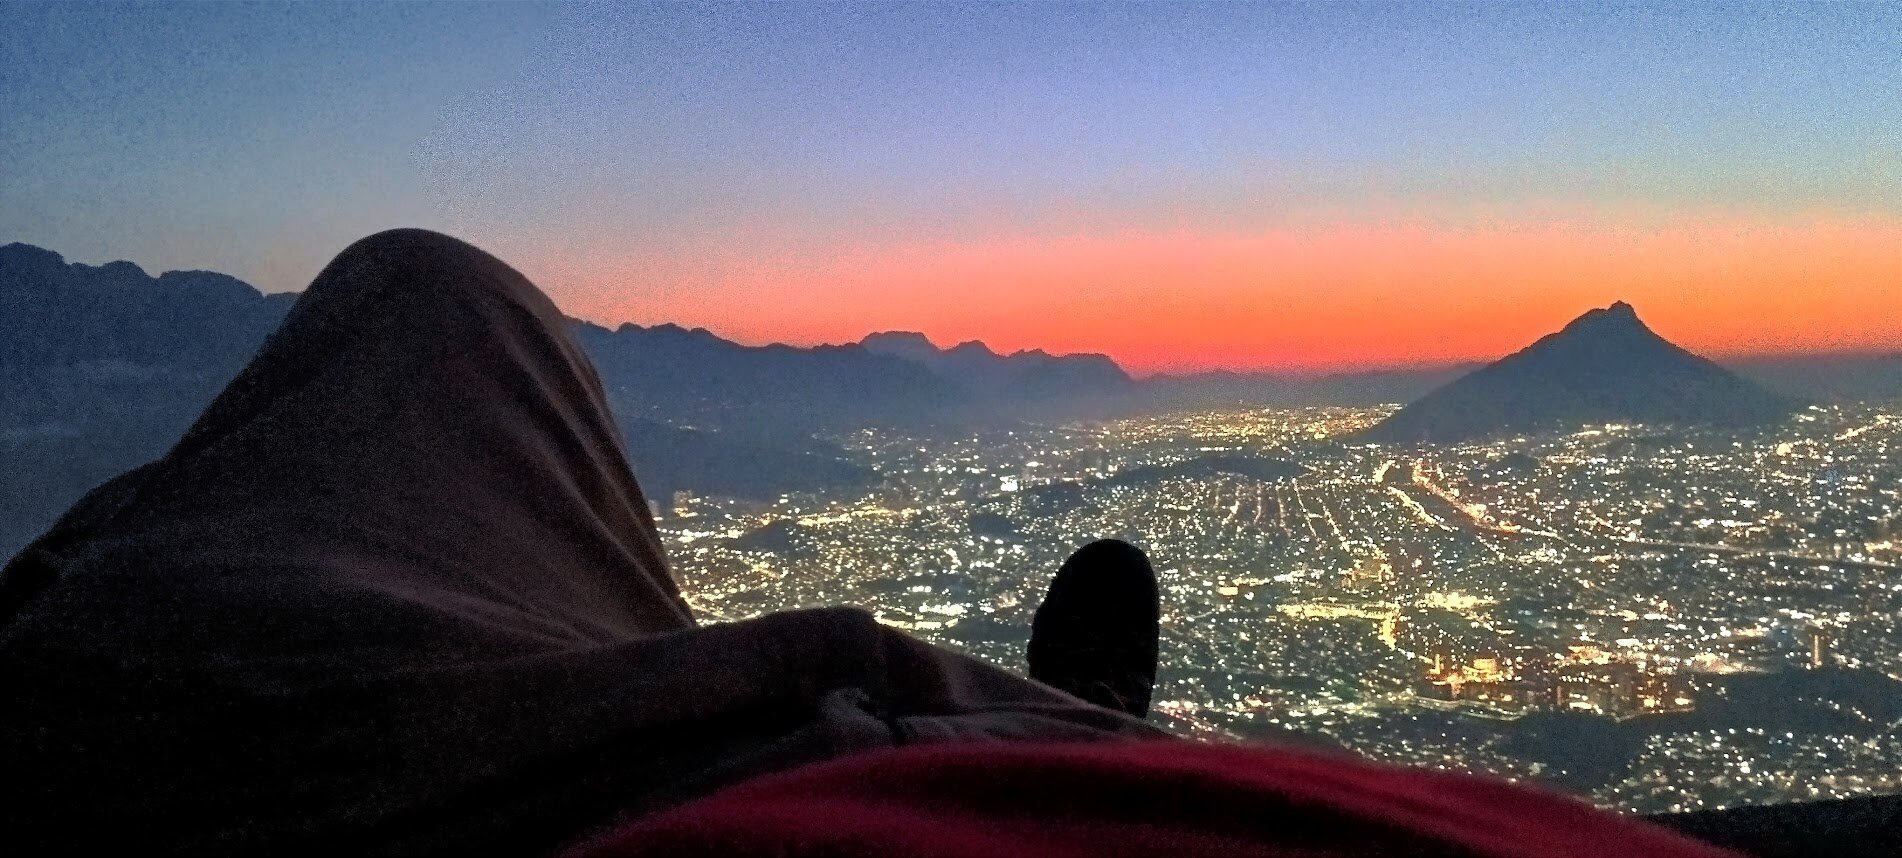 Vista del atardecer en el cerro de la silla en Monterrey, Nuevo León, estoy acostado y solo se ven mis pies, la ciudad de fondo.